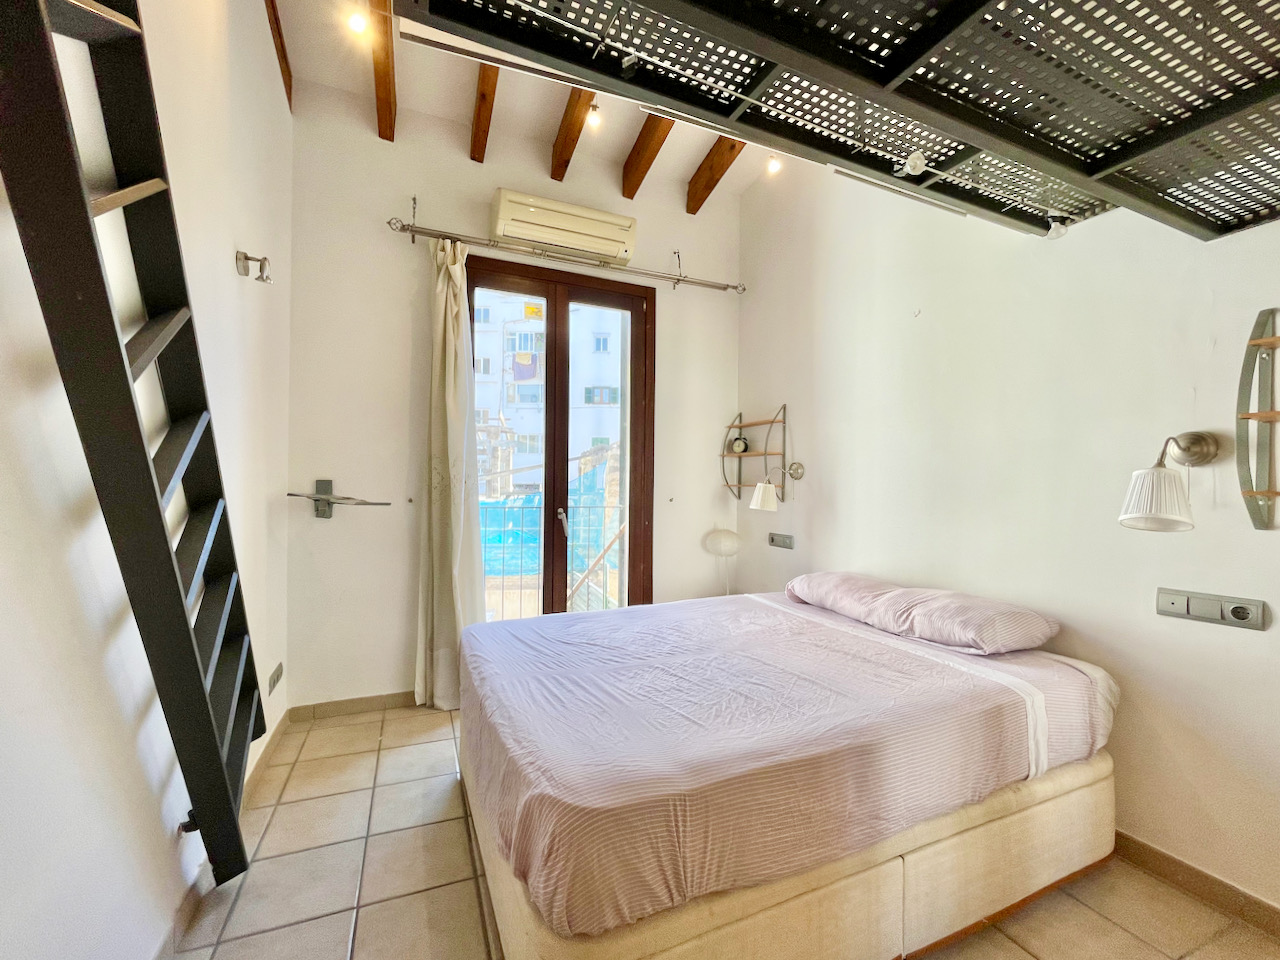 Fantastisch appartement met twee slaapkamers in Sa Gerreria, het oude centrum van Palma.